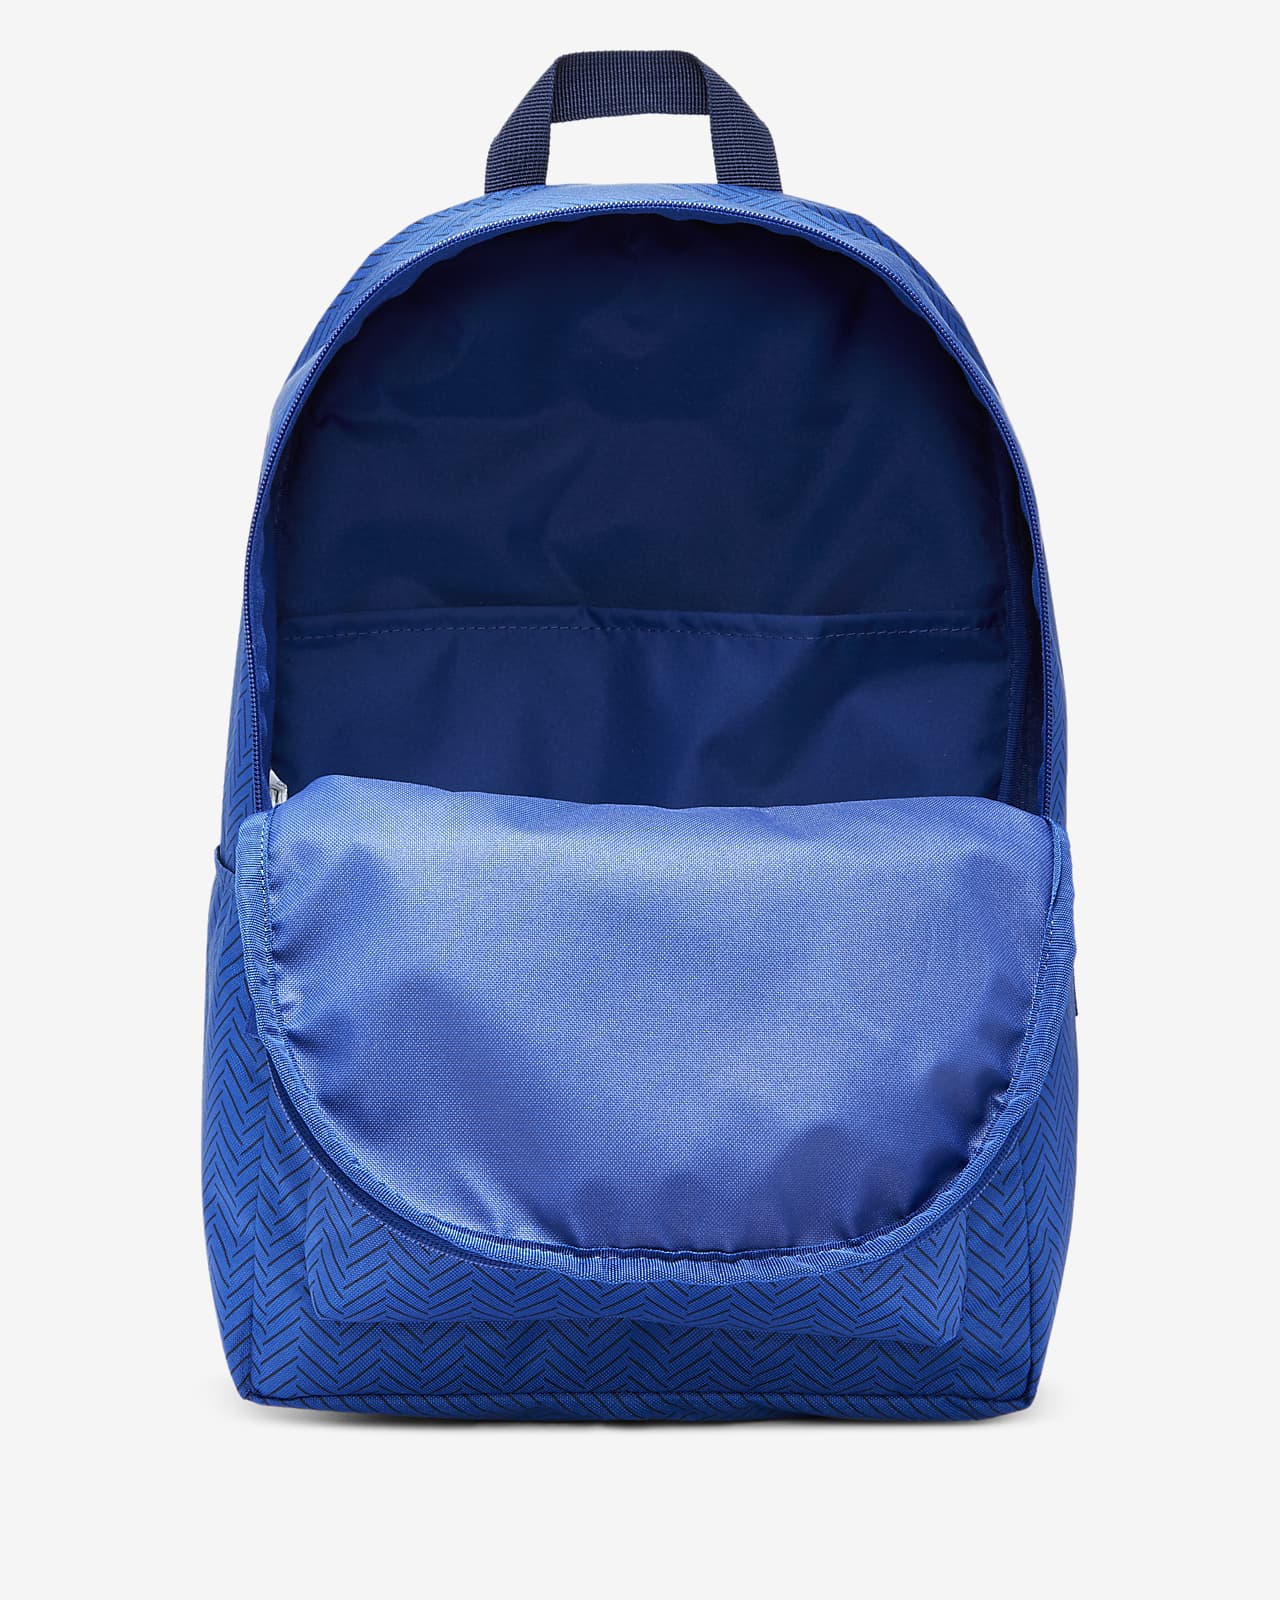 chelsea backpack nike